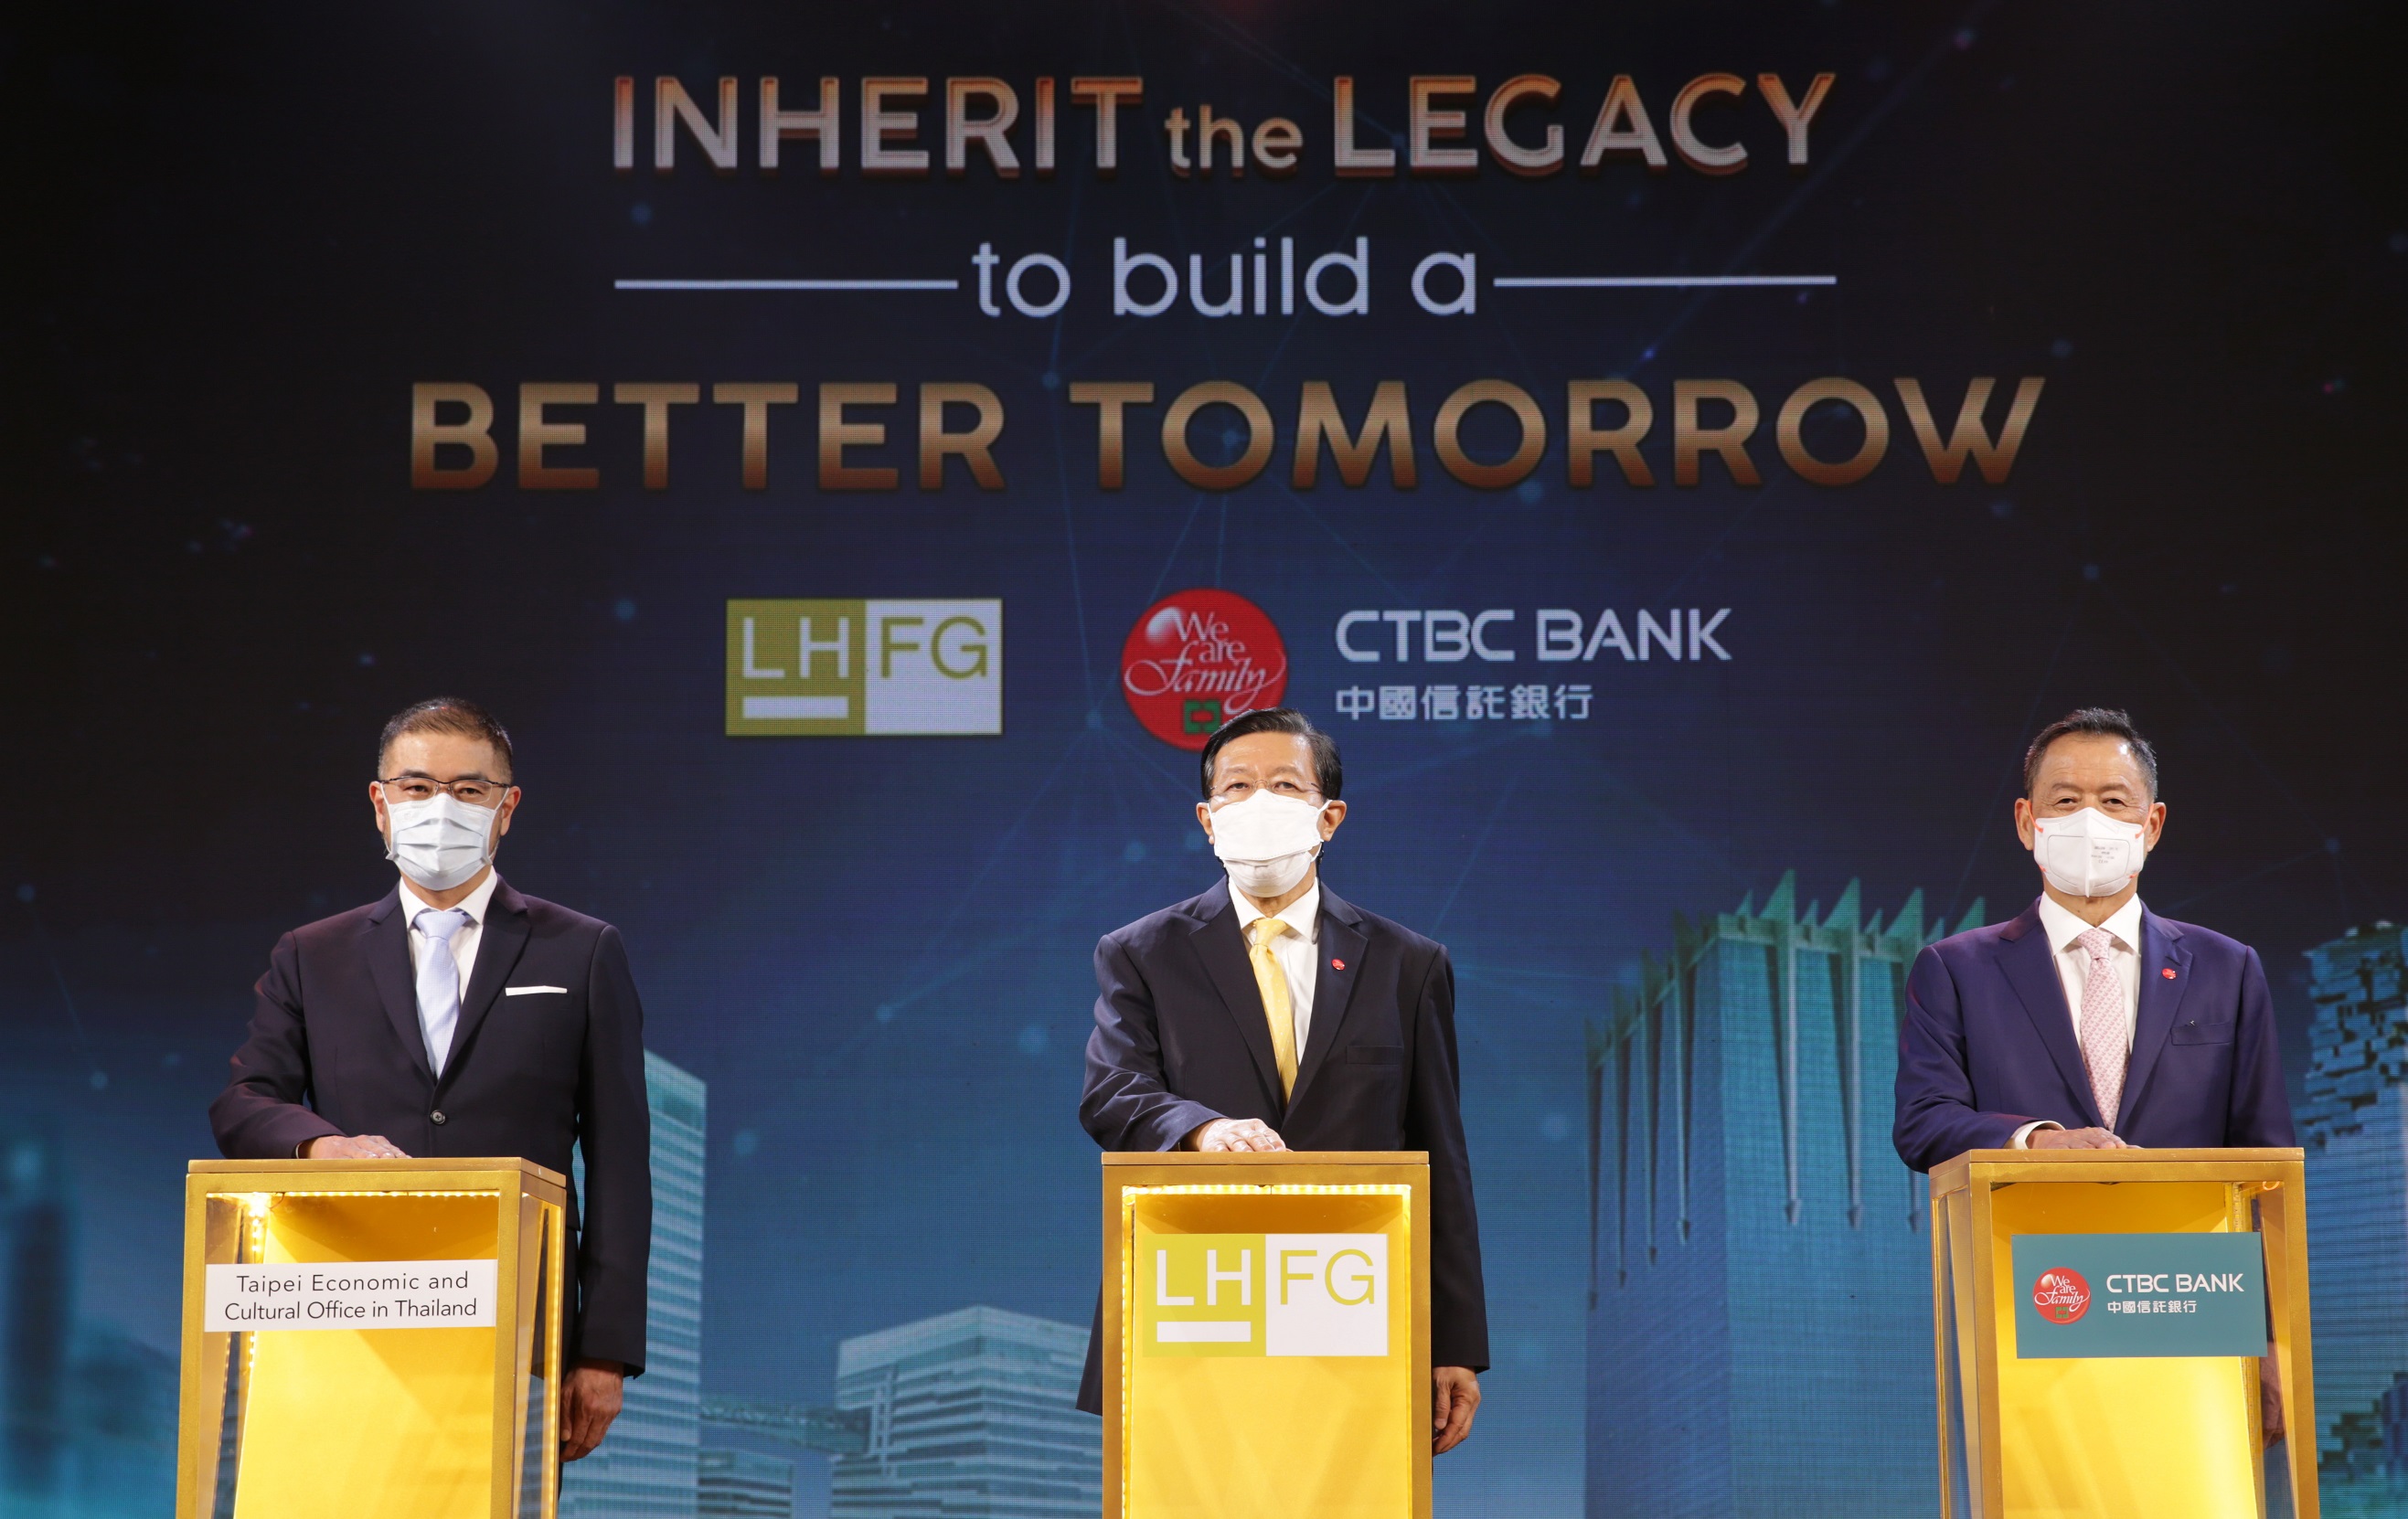 กลุ่มธุรกิจทางการเงินแลนด์ แอนด์ เฮ้าส์ จับมือพันธมิตร CTBC Bank จัดงาน “Inherit the Legacy to build a Better Tomorrow” ขอบคุณลูกค้าและคู่ค้าทางธุรกิจ